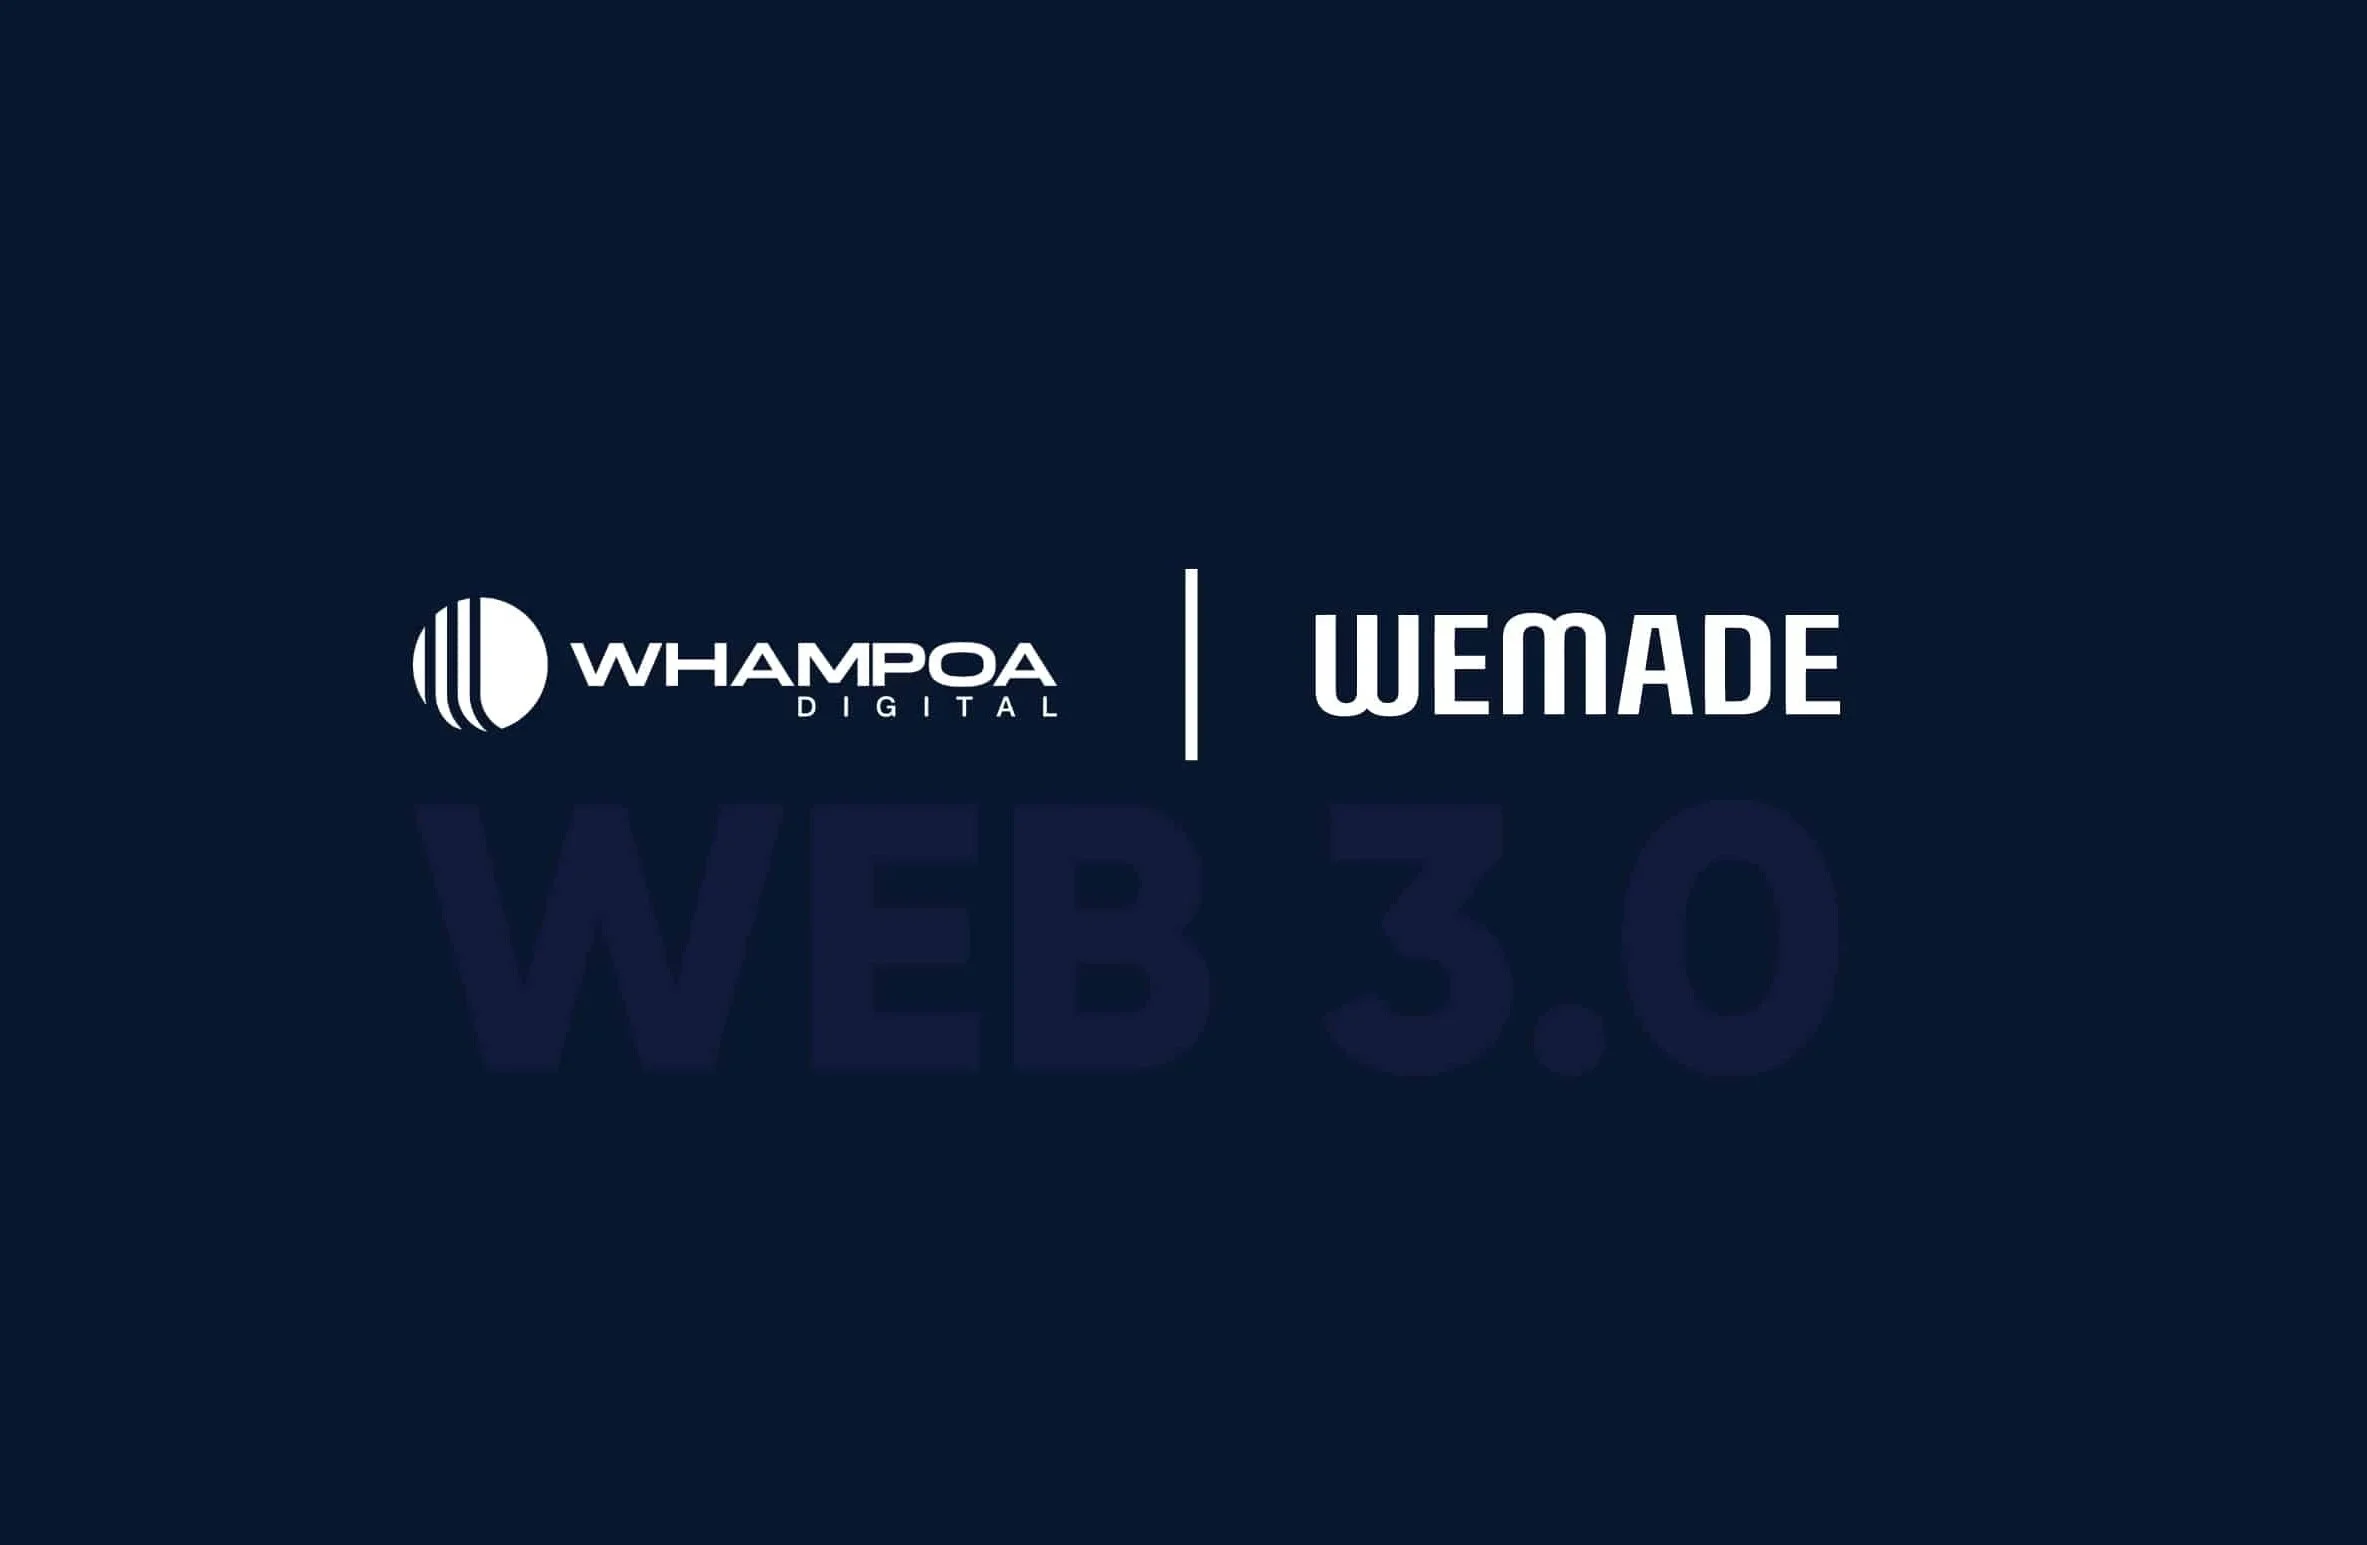 Wemade colaborează cu Whampoa Digital pentru proiecte de jocuri Web3